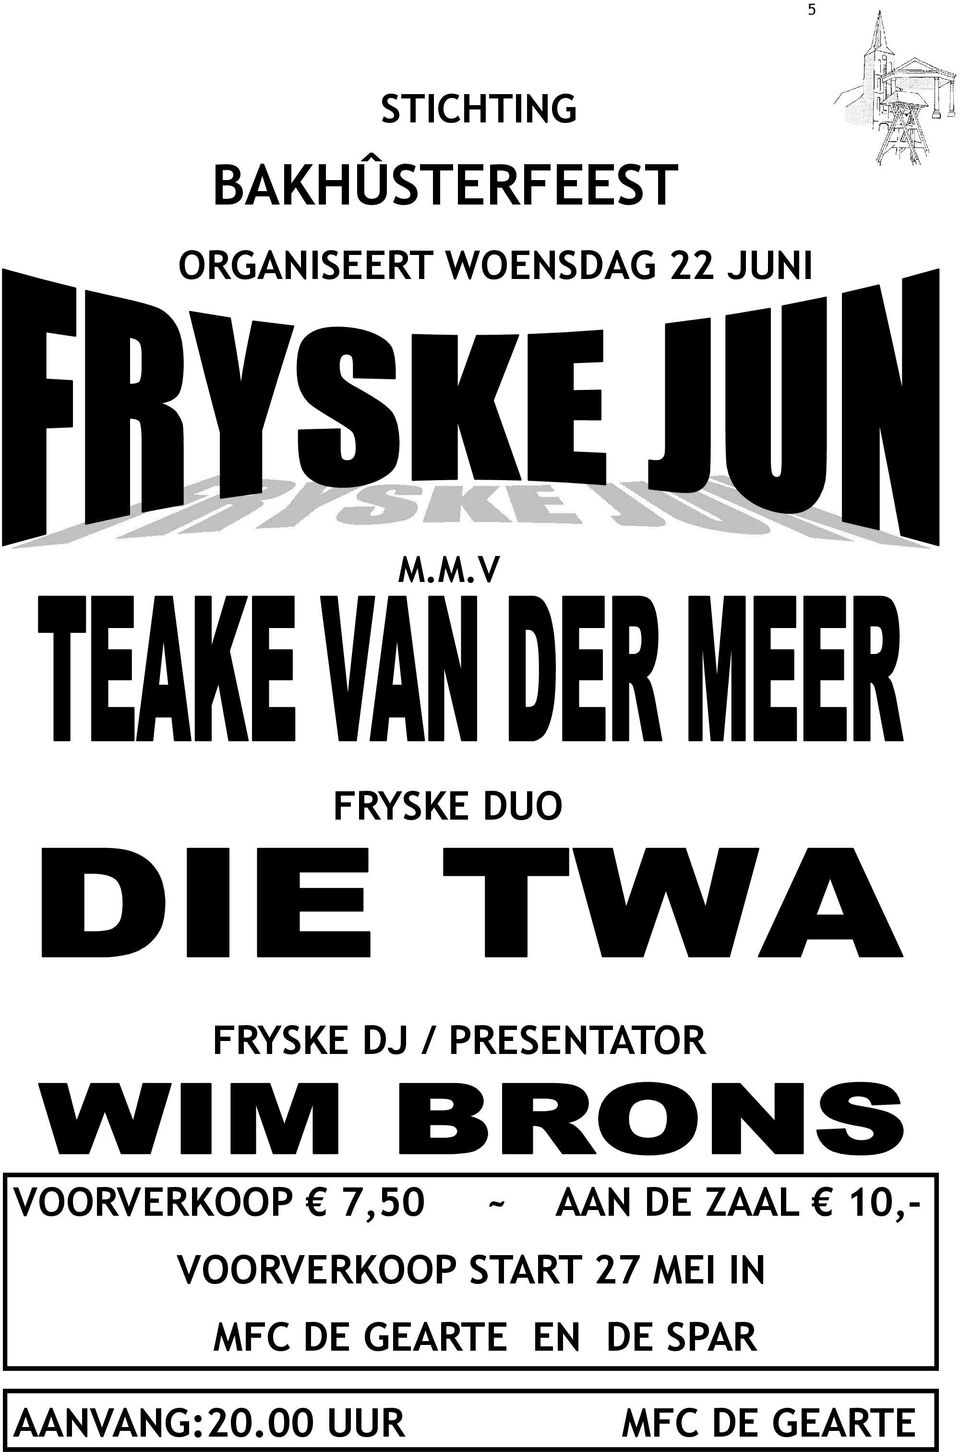 M.V FRYSKE DUO FRYSKE DJ / PRESENTATOR VOORVERKOOP